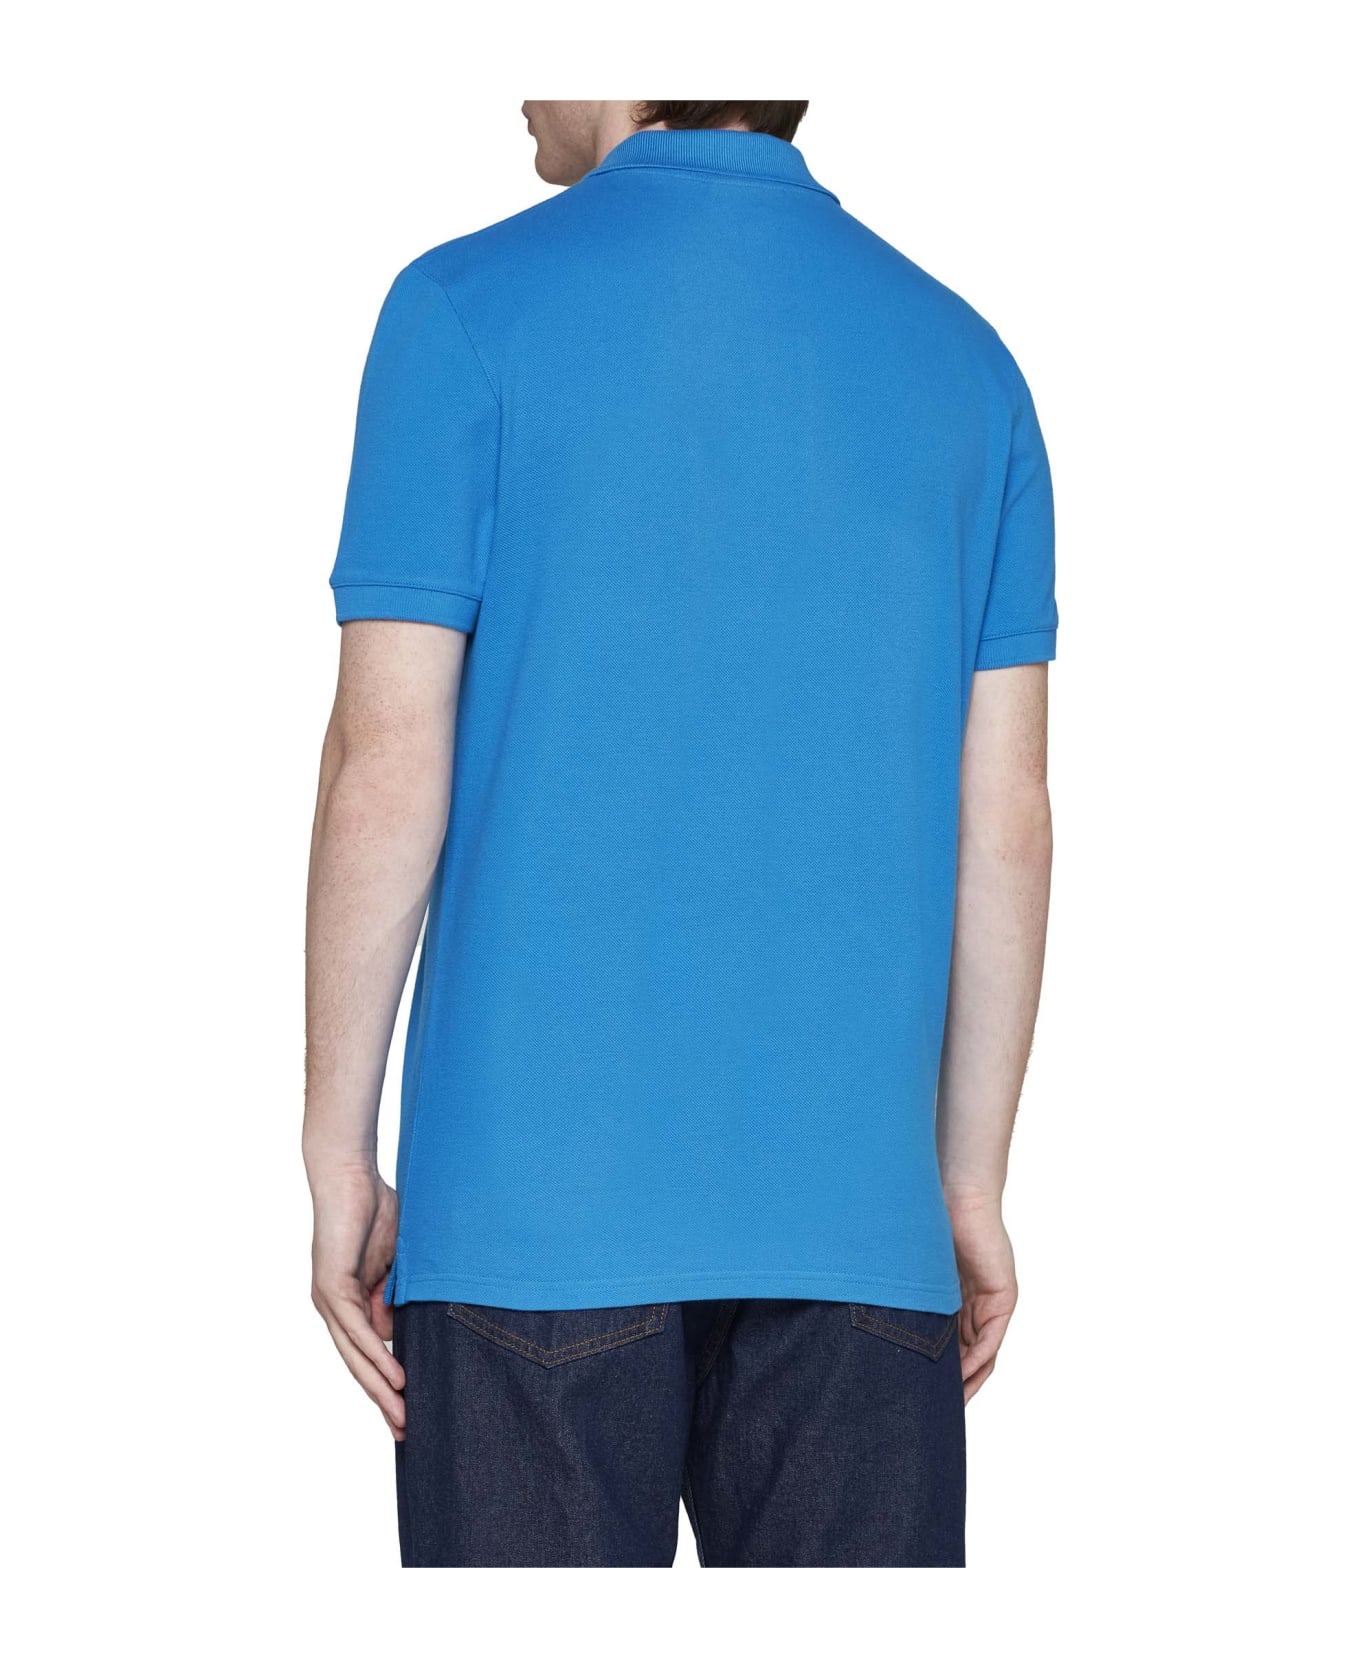 Maison Kitsuné Polo Shirt - Enamel blue